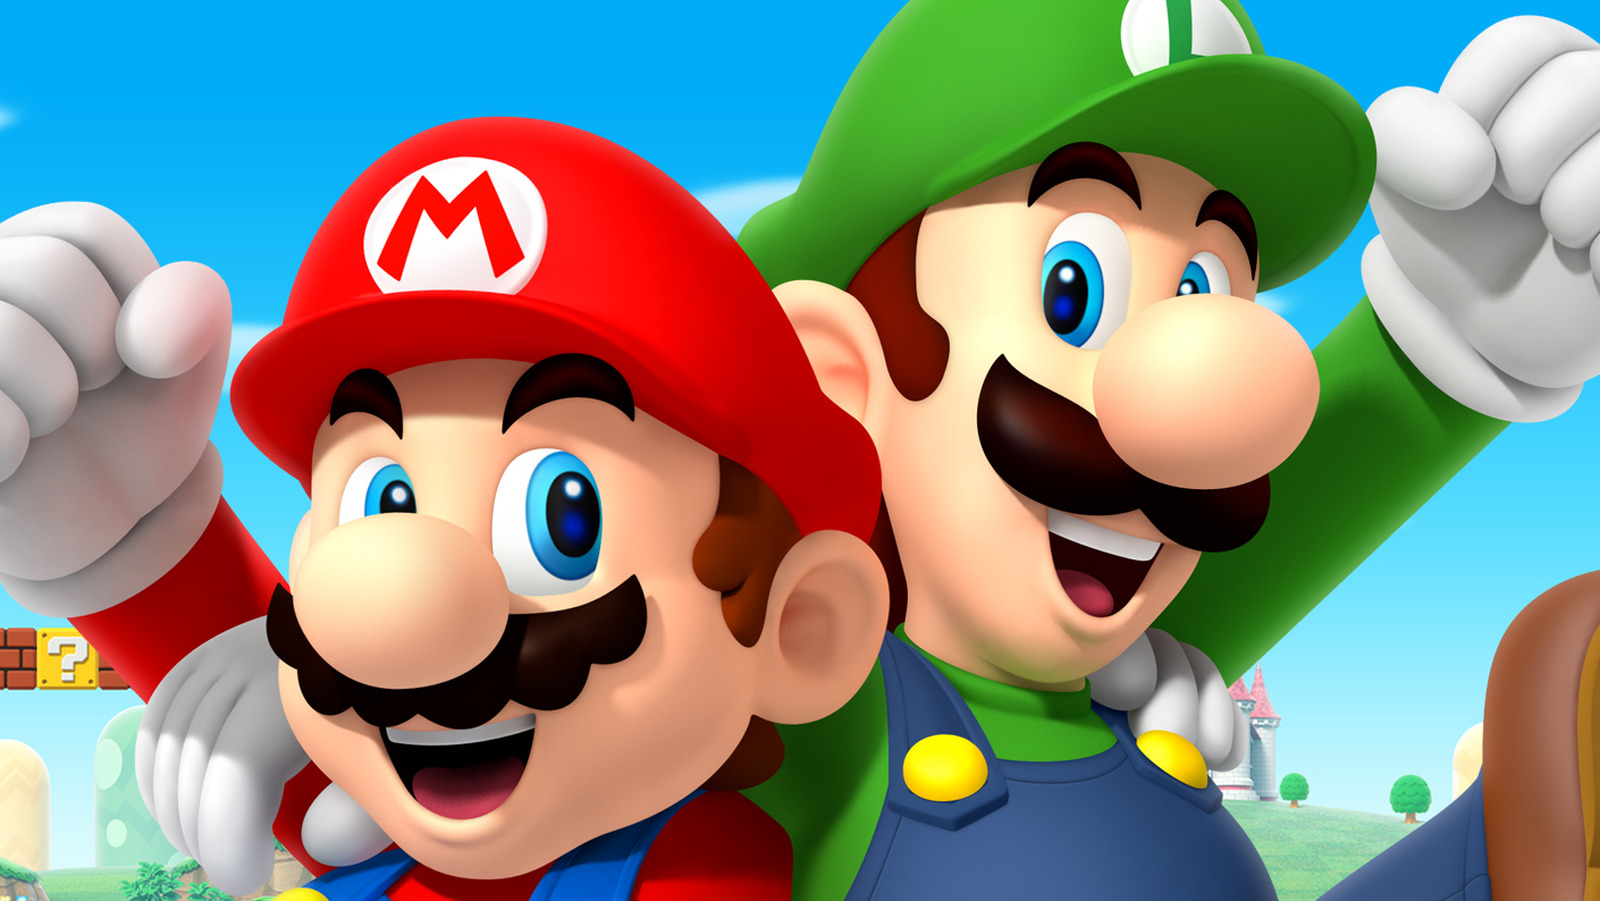 Luigi vs Mario - Difference and Comparison